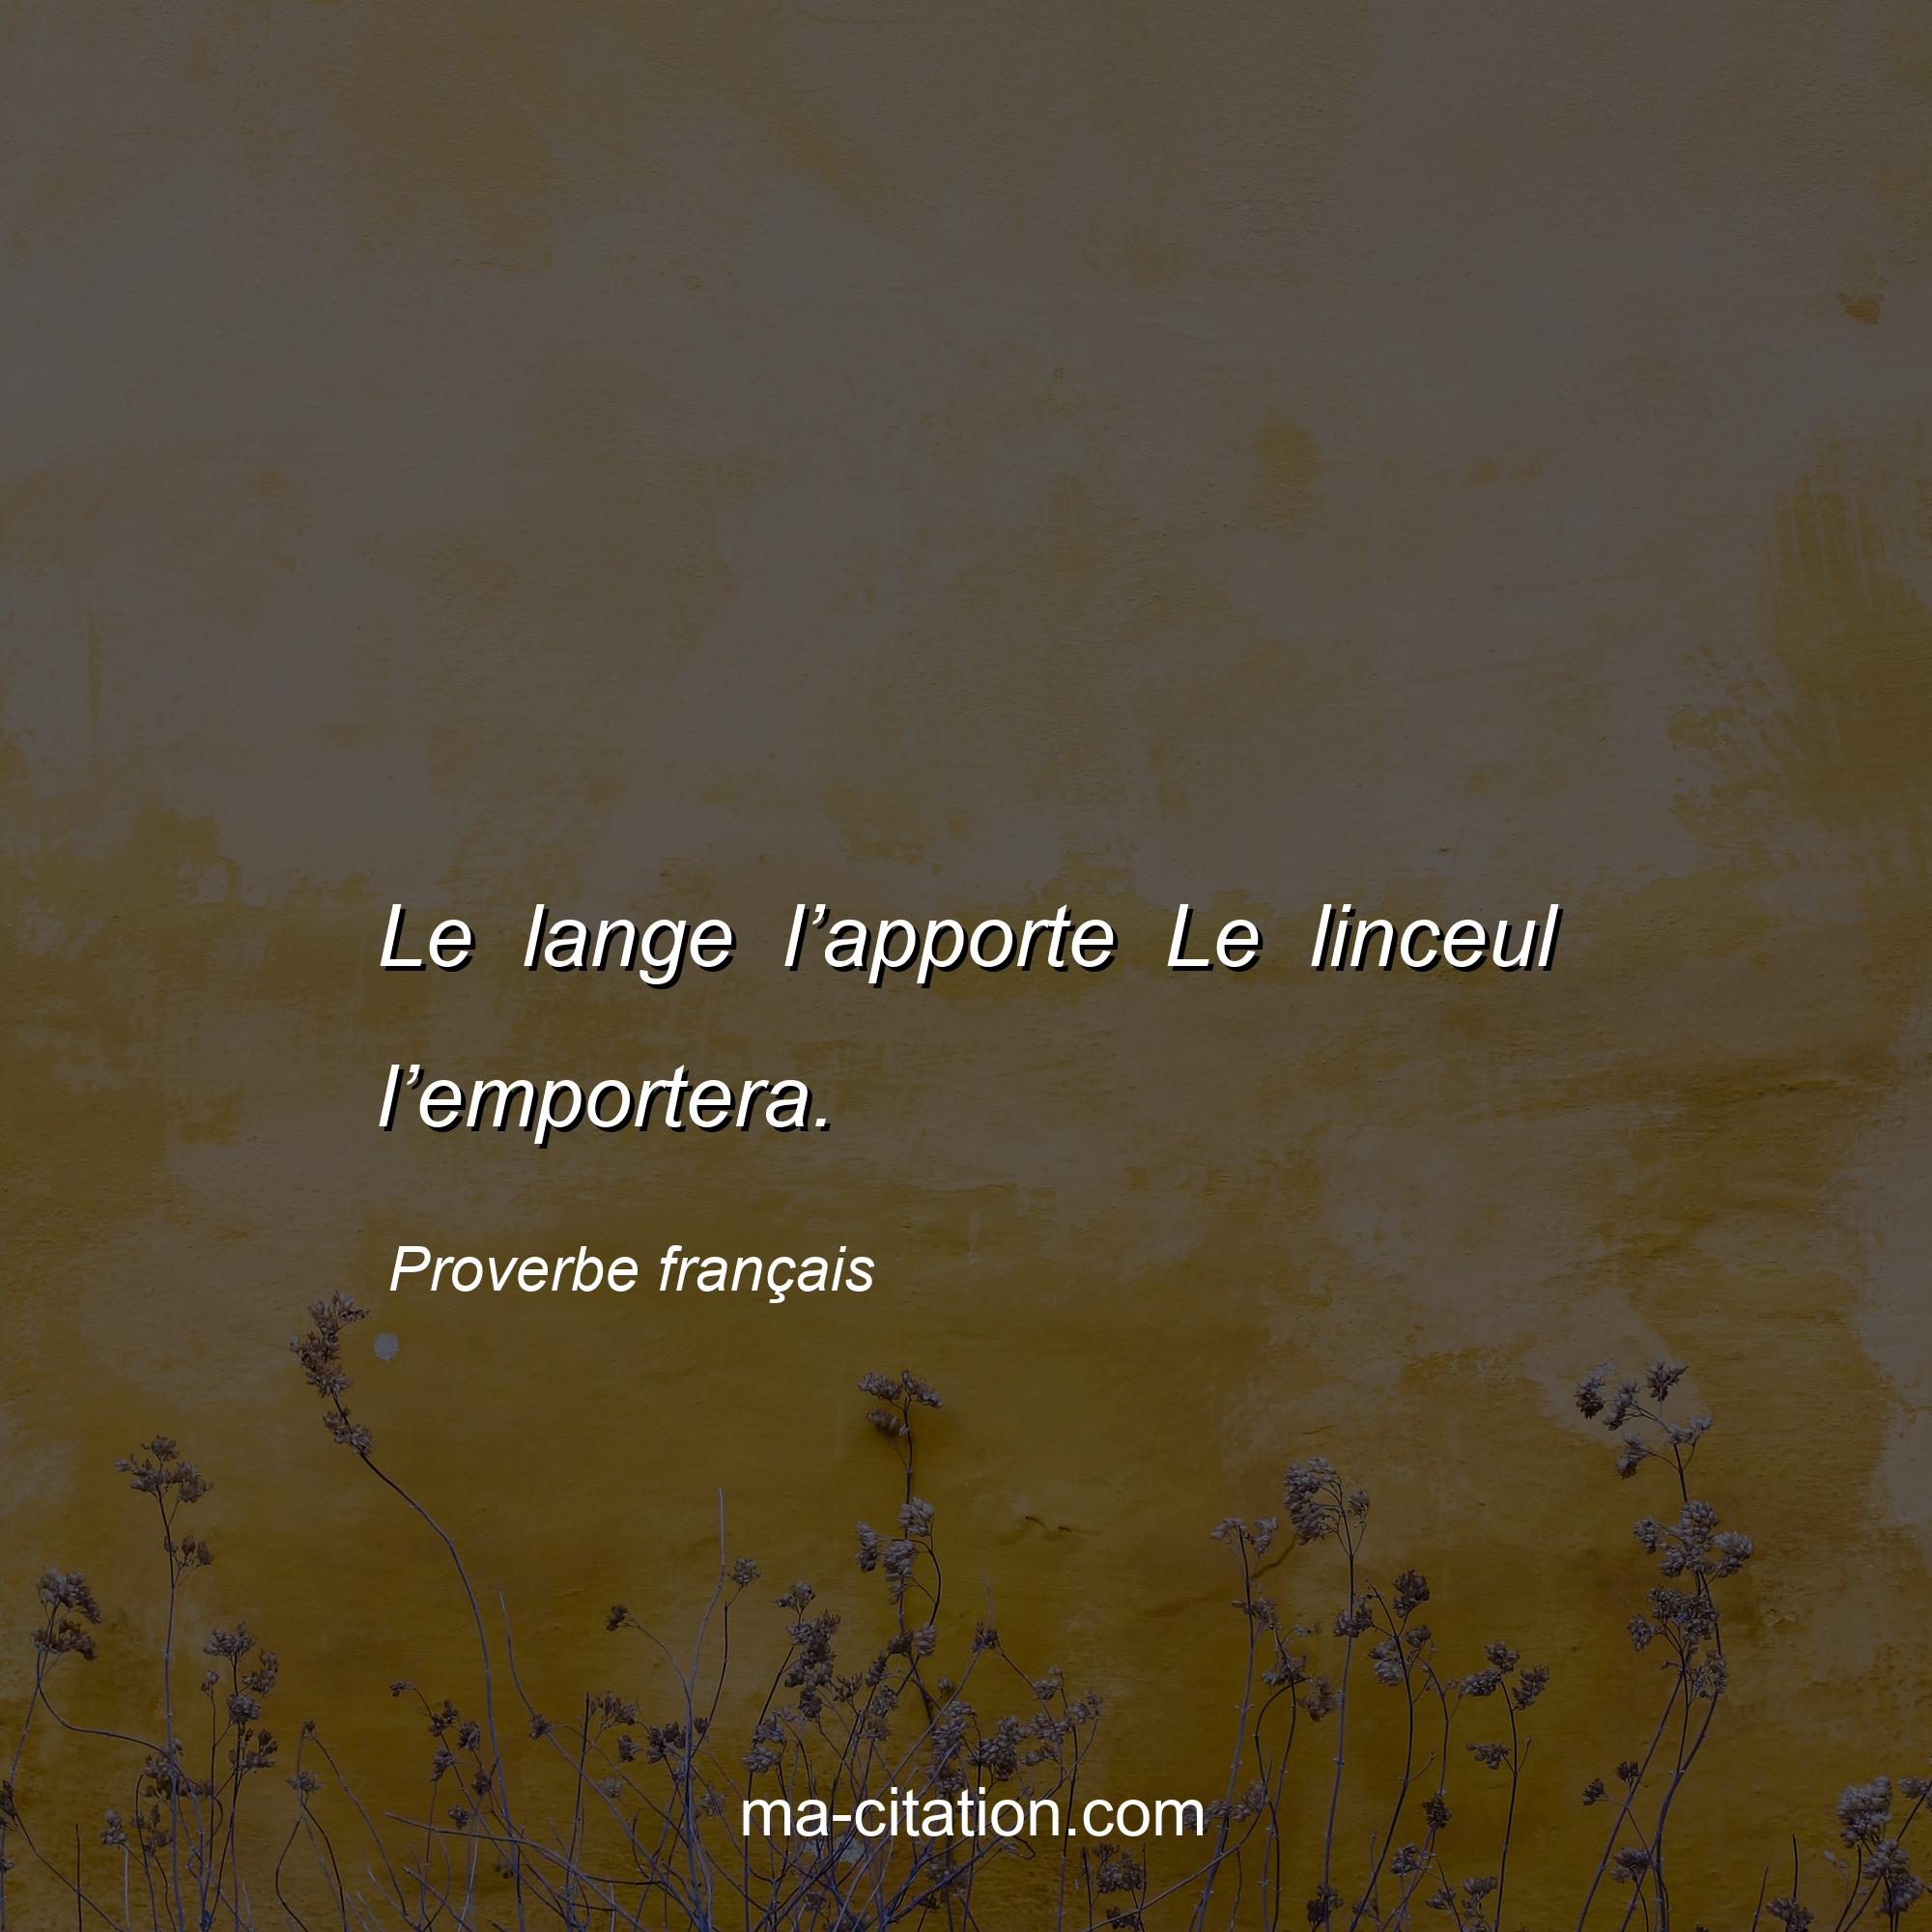 Proverbe français : Le lange l’apporte Le linceul l’emportera.